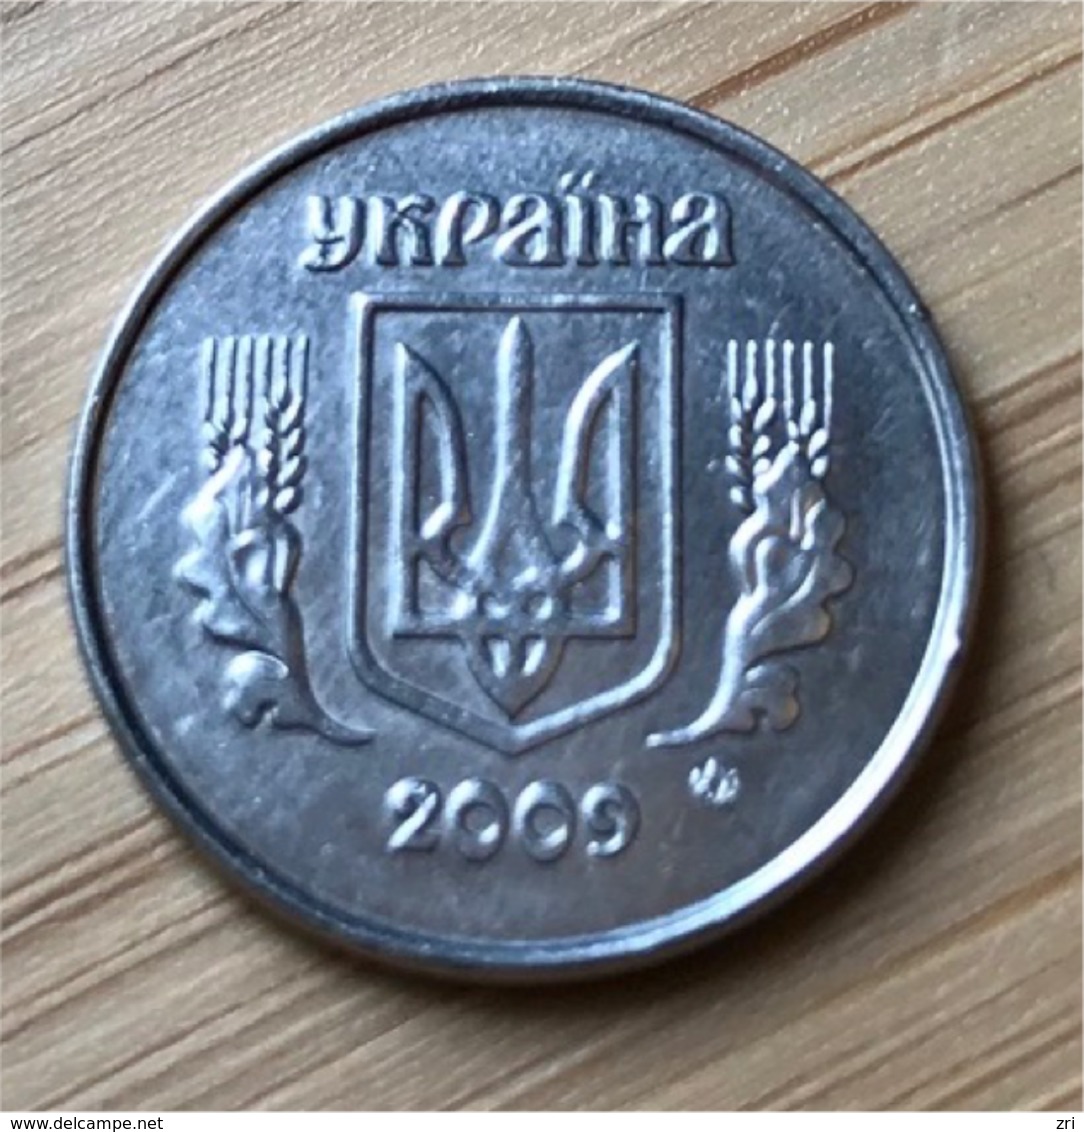 Pièce De 1 Kopek (Ukraine) - Ukraine